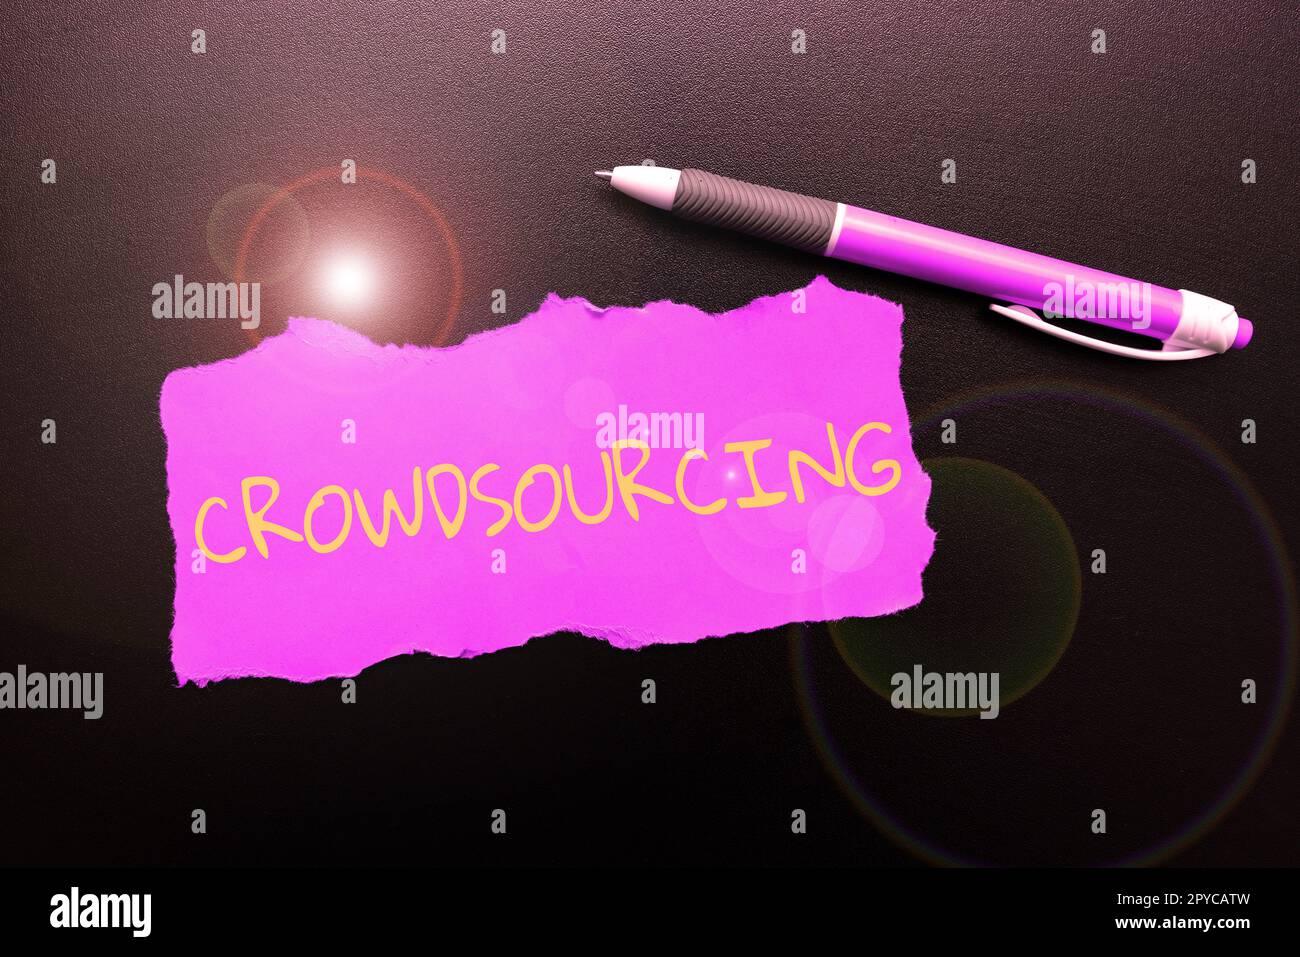 Handgeschriebenes Schild Crowdsourcing. Konzeptfoto Gewinnen von Arbeitsinformationen von einer großen Gruppe von Personen Stockfoto